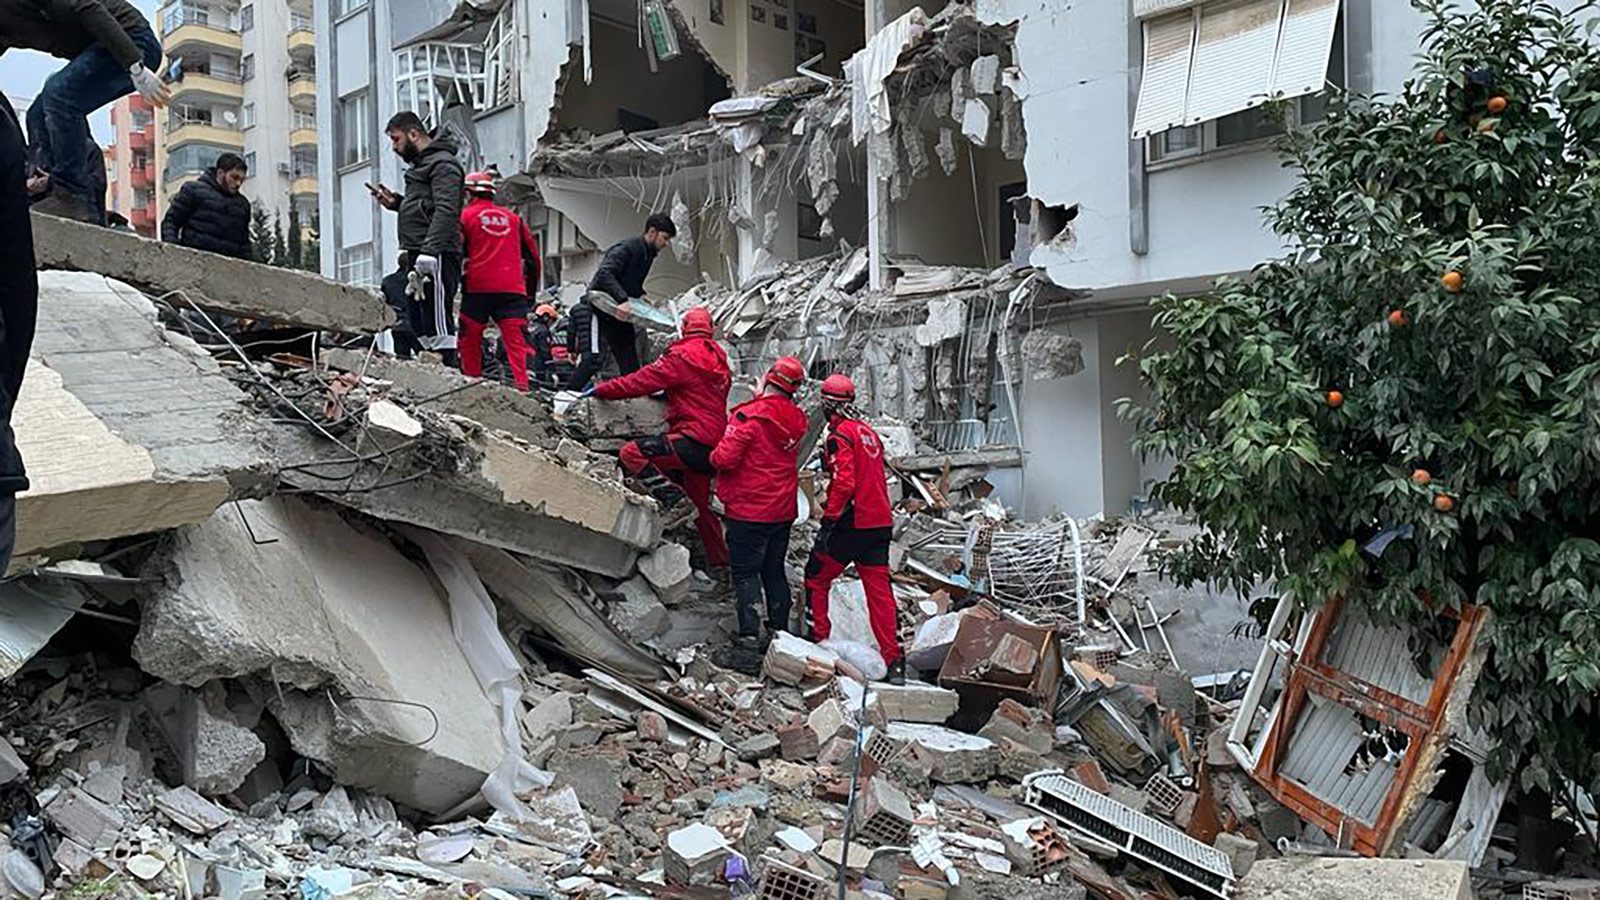 Tërmeti apokaliptik në Turqi dhe Siri/ Shkon në 2500 numri i viktimave, vazhdojnë përpjekjet për shpëtim